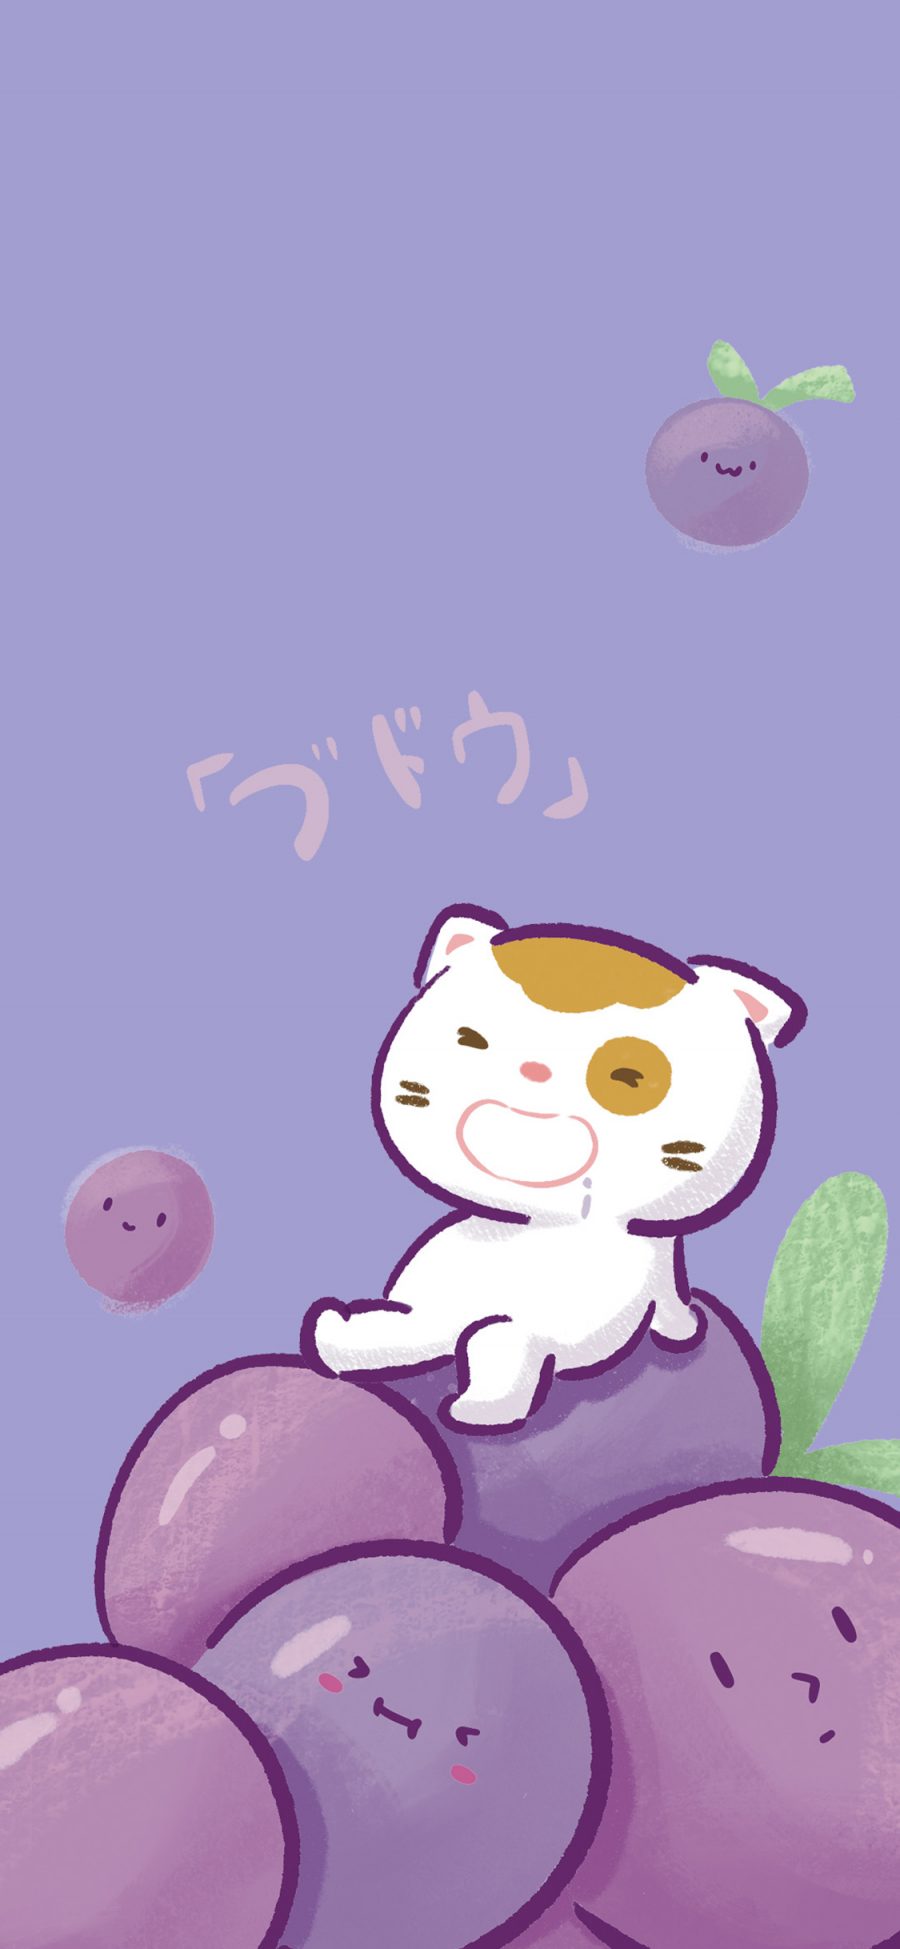 [2436×1125]猫咪 葡萄 紫色 可爱 苹果手机动漫壁纸图片